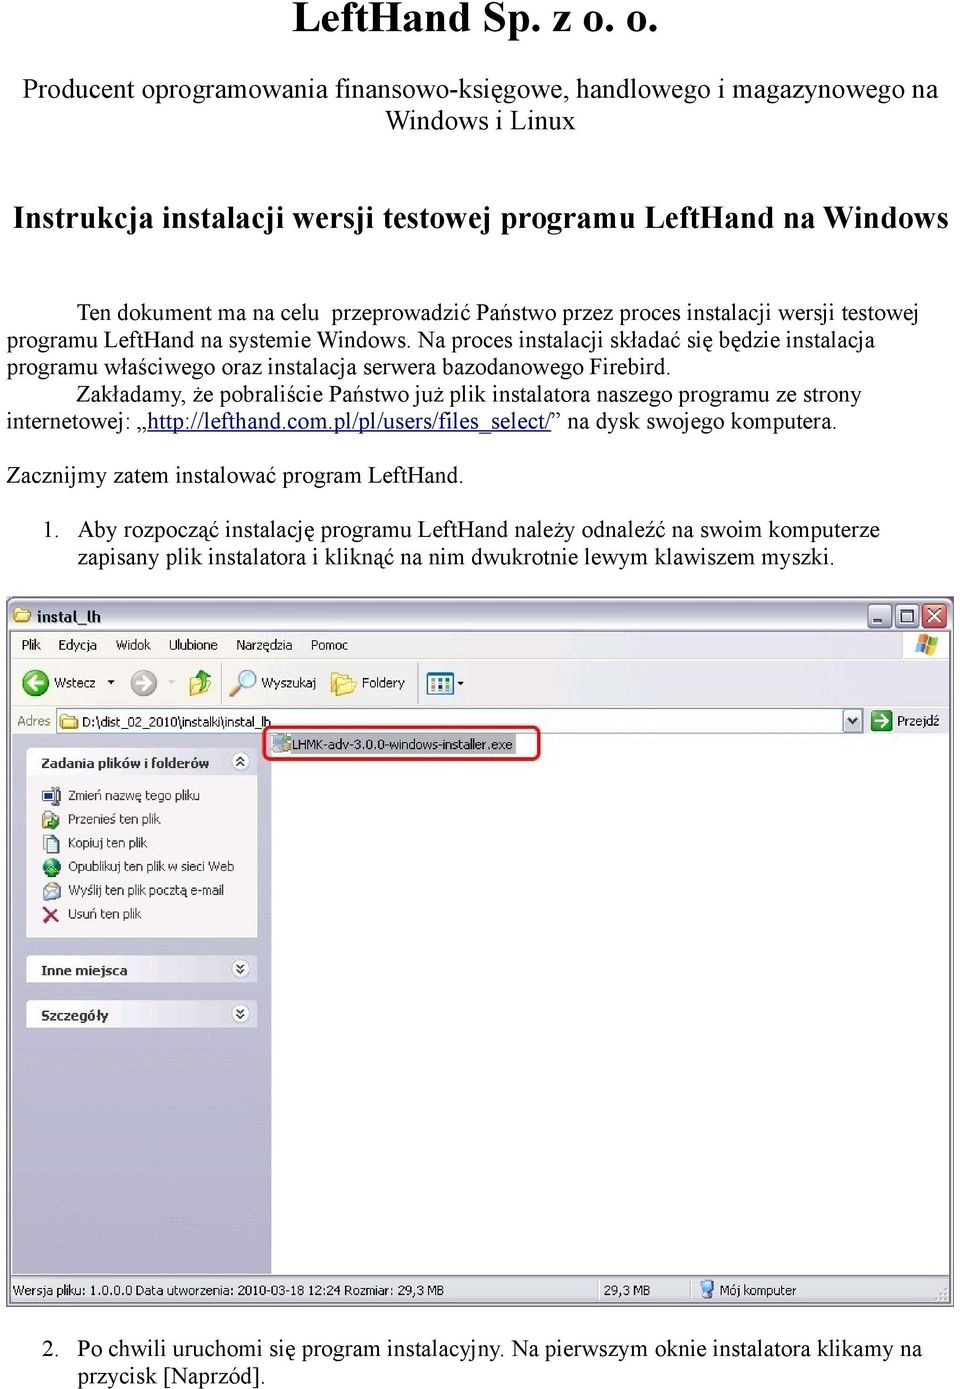 Państwo przez proces instalacji wersji testowej programu LeftHand na systemie Windows.